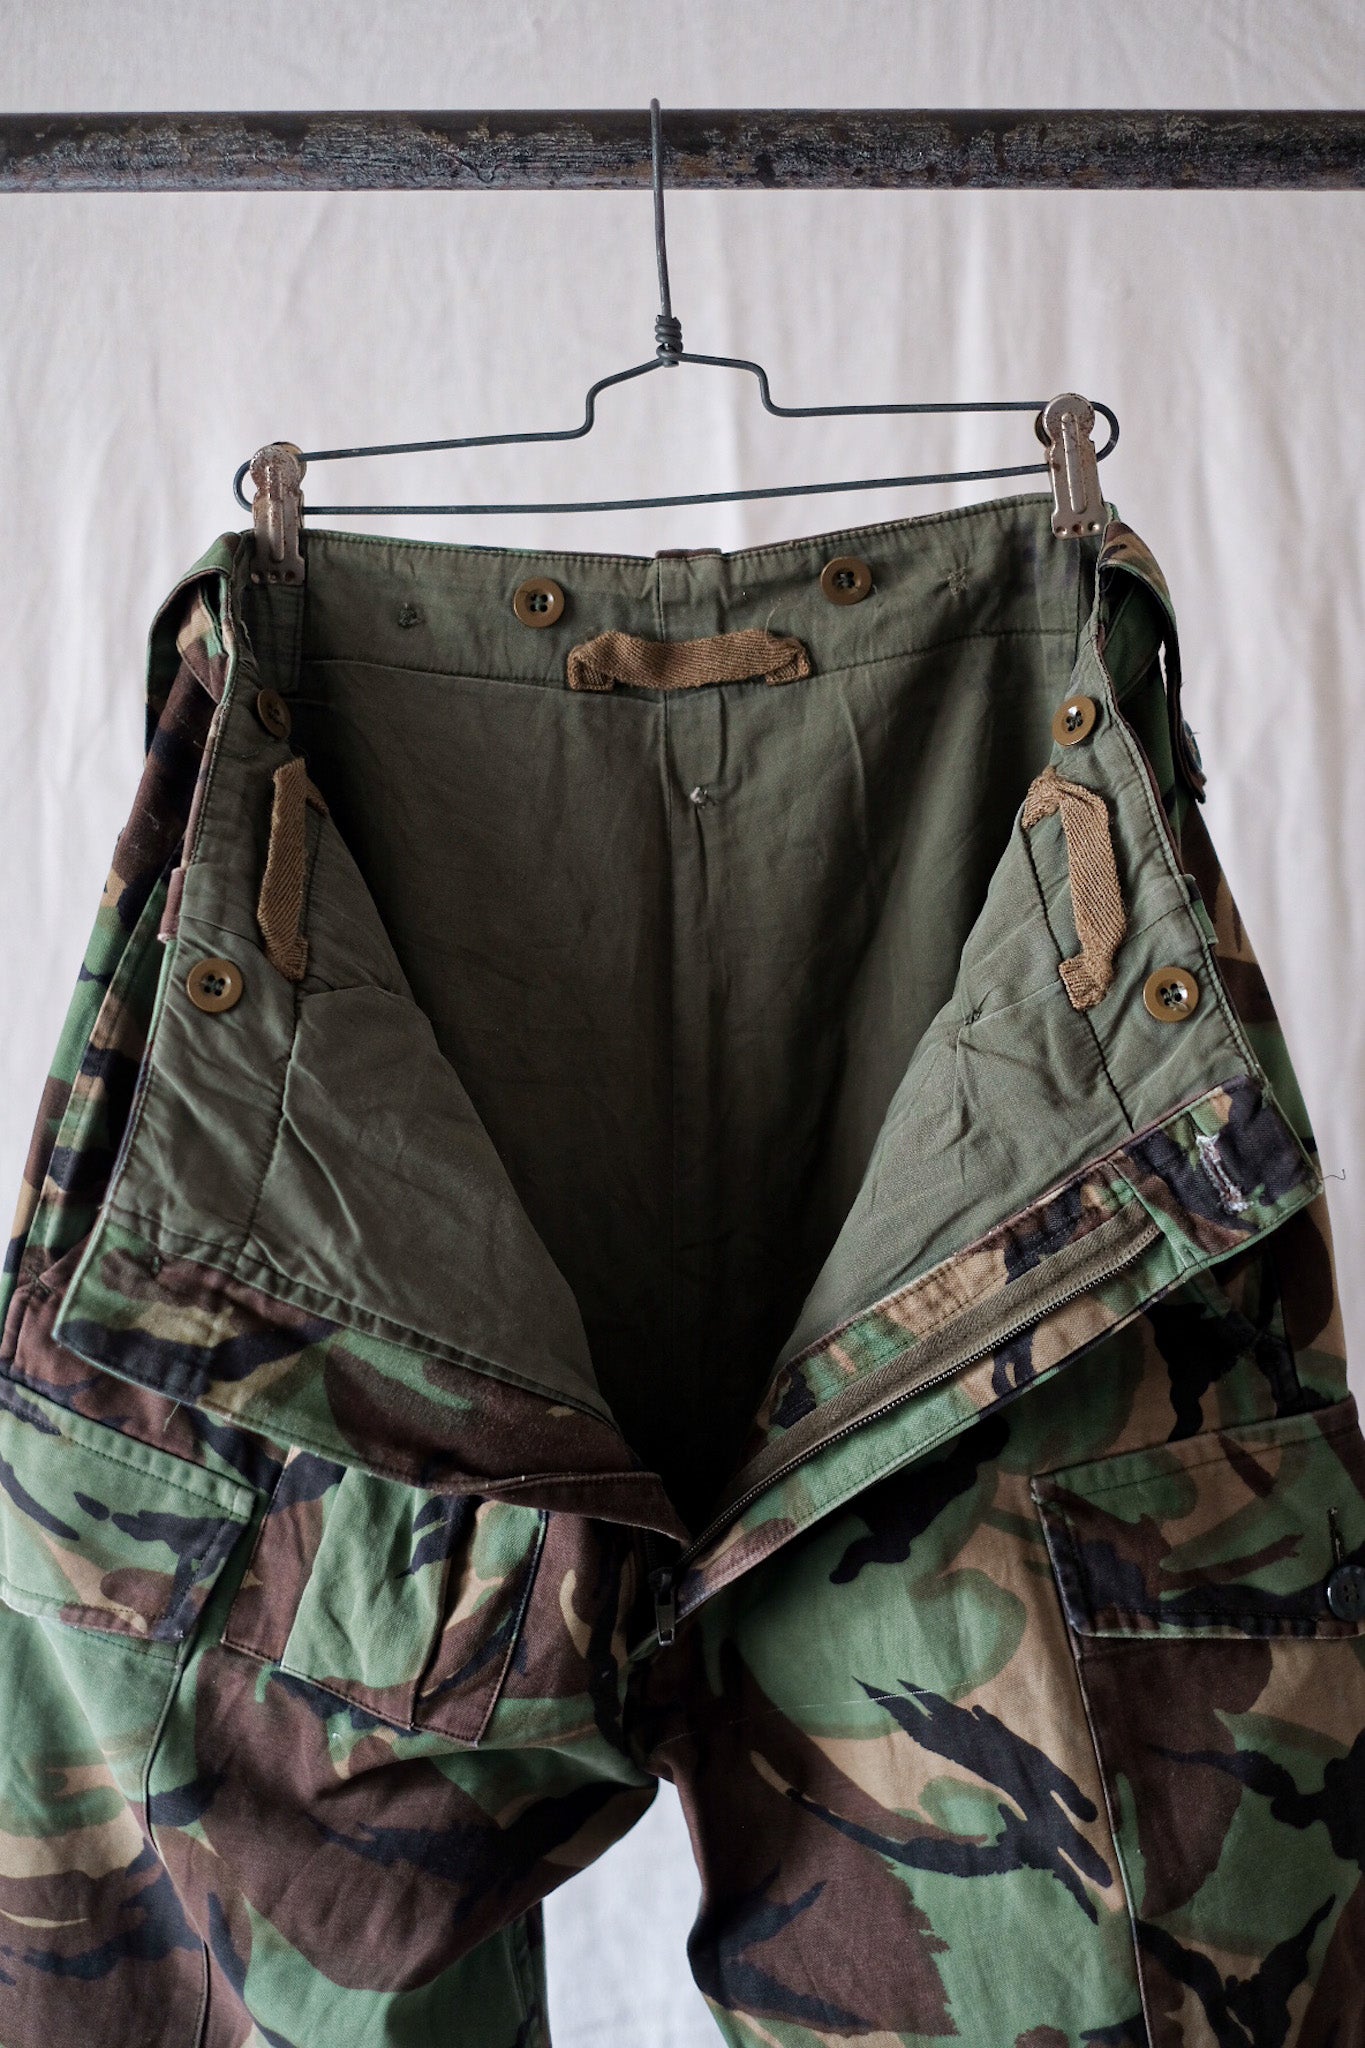 [〜60年代]英國軍隊1968年模式DPM迷彩褲子大小。1